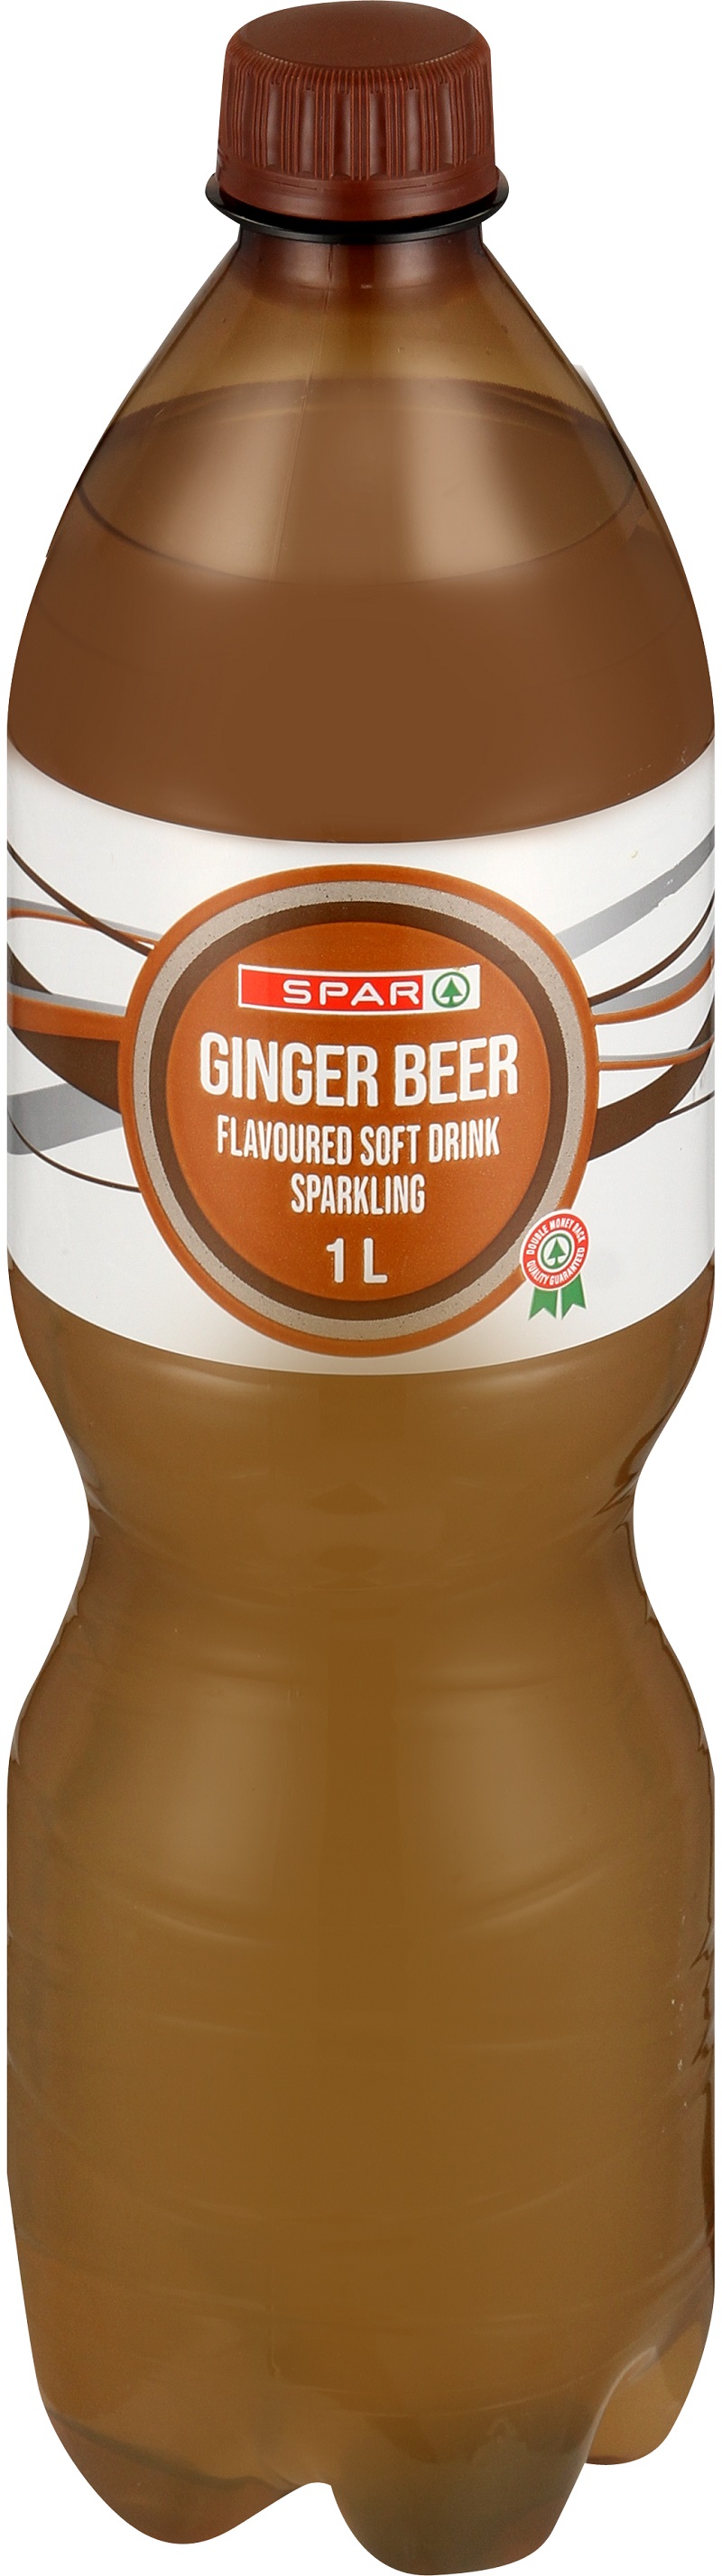 carbonated soft drink ginger beer flavoured